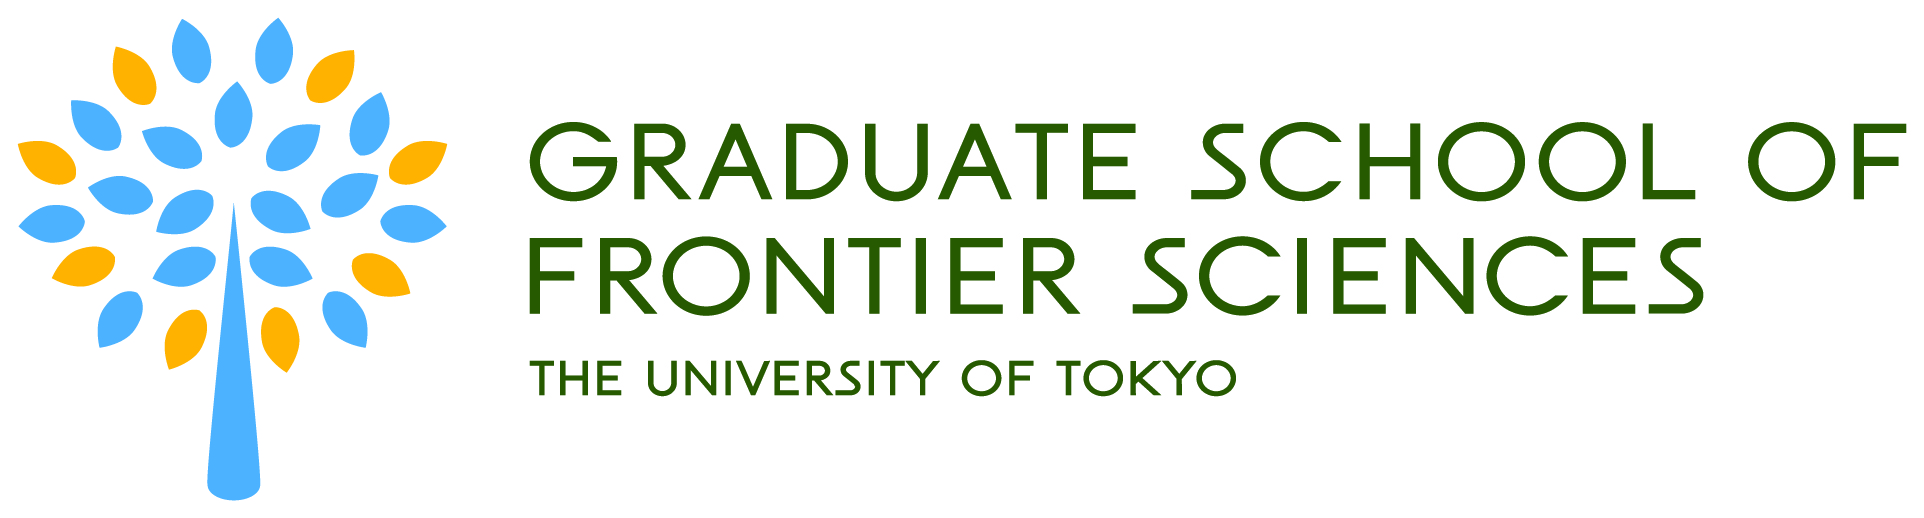 Graduate School of Frontier Sciences, The University of Tokyo